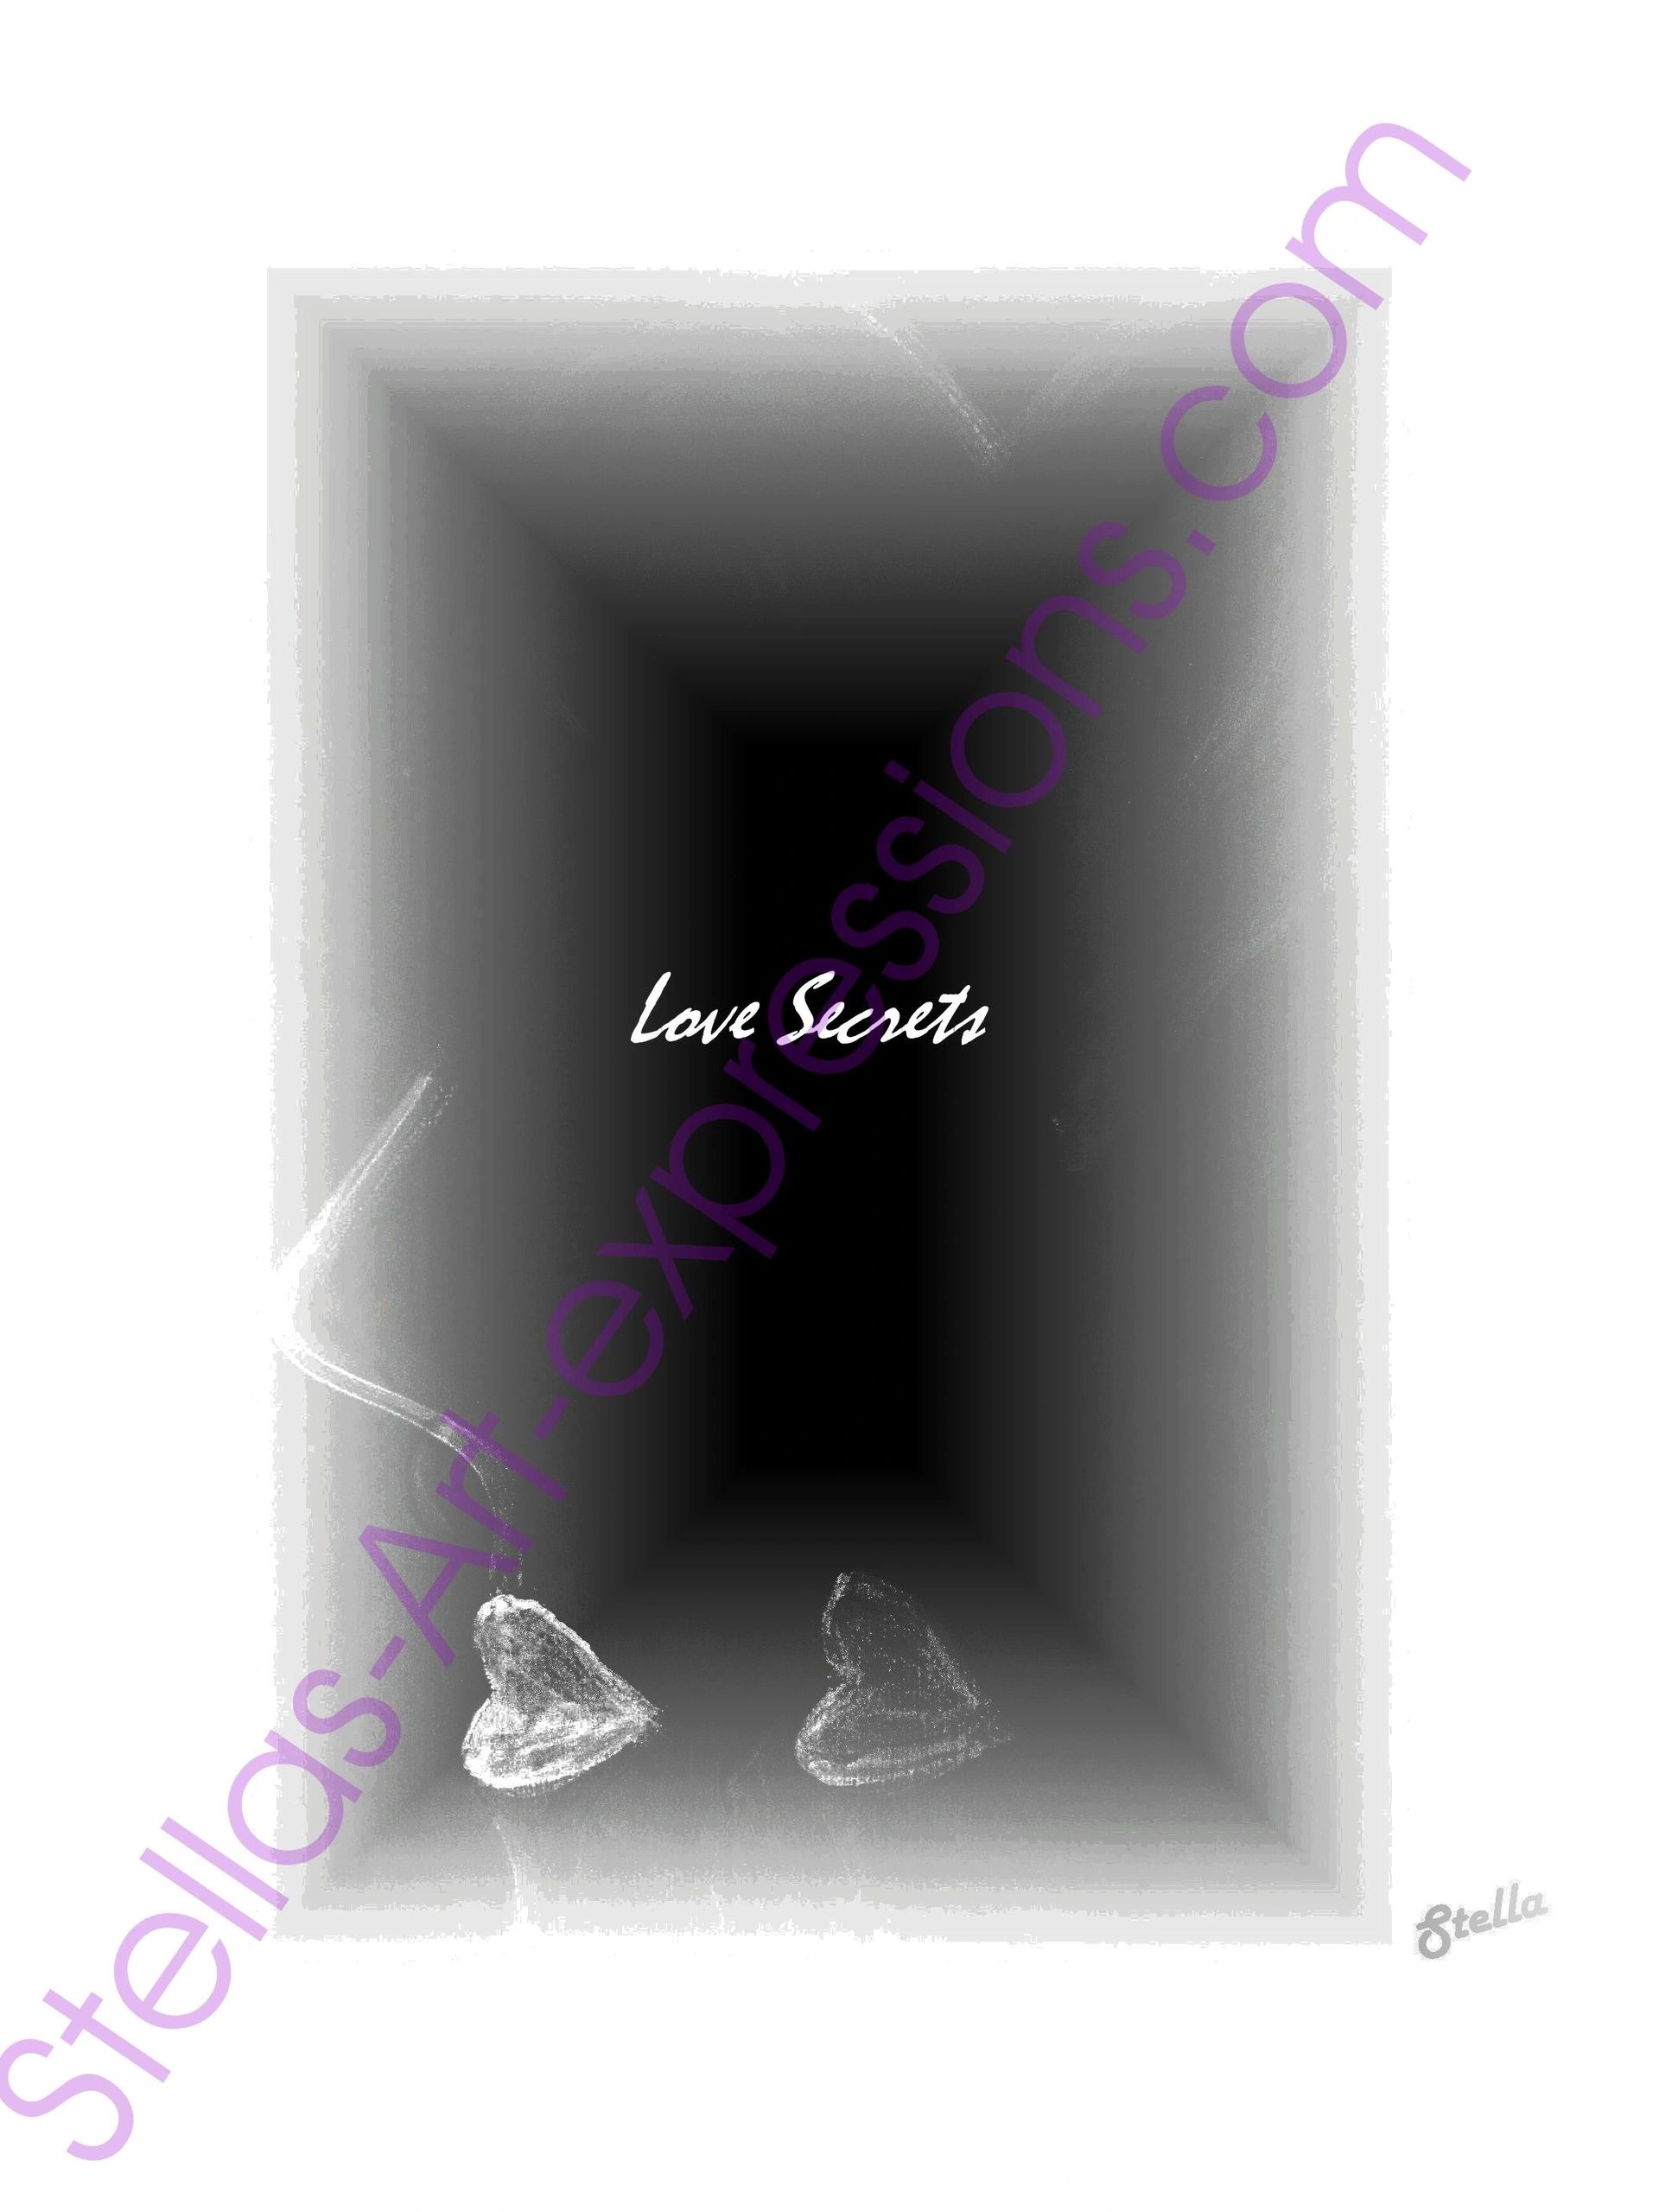 LoveSecrets.jpg